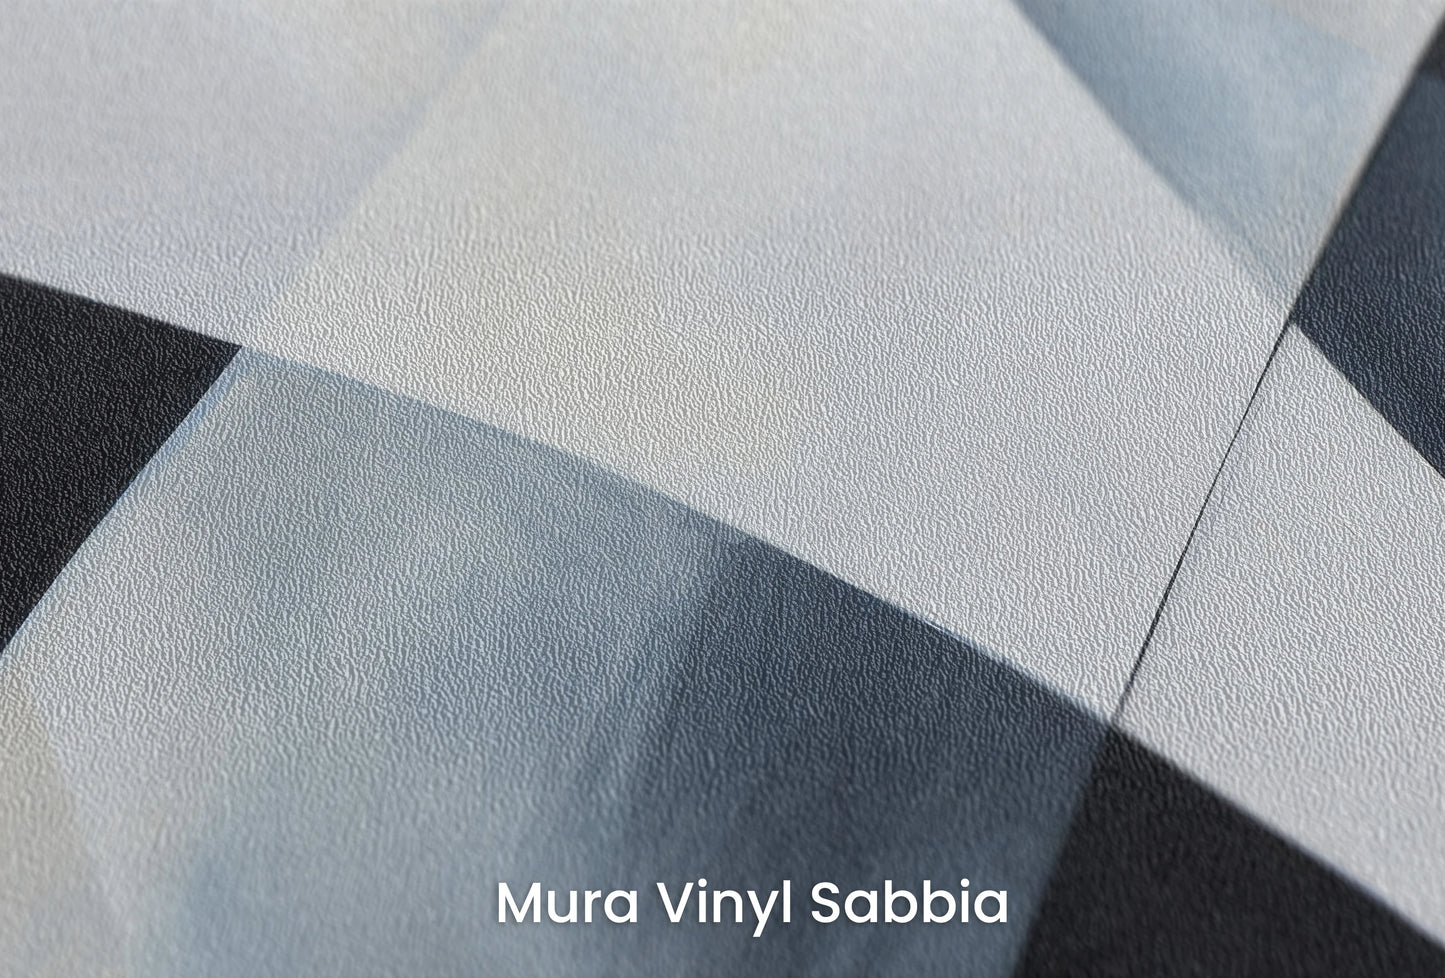 Zbliżenie na artystyczną fototapetę o nazwie Shades of Geometry na podłożu Mura Vinyl Sabbia struktura grubego ziarna piasku.